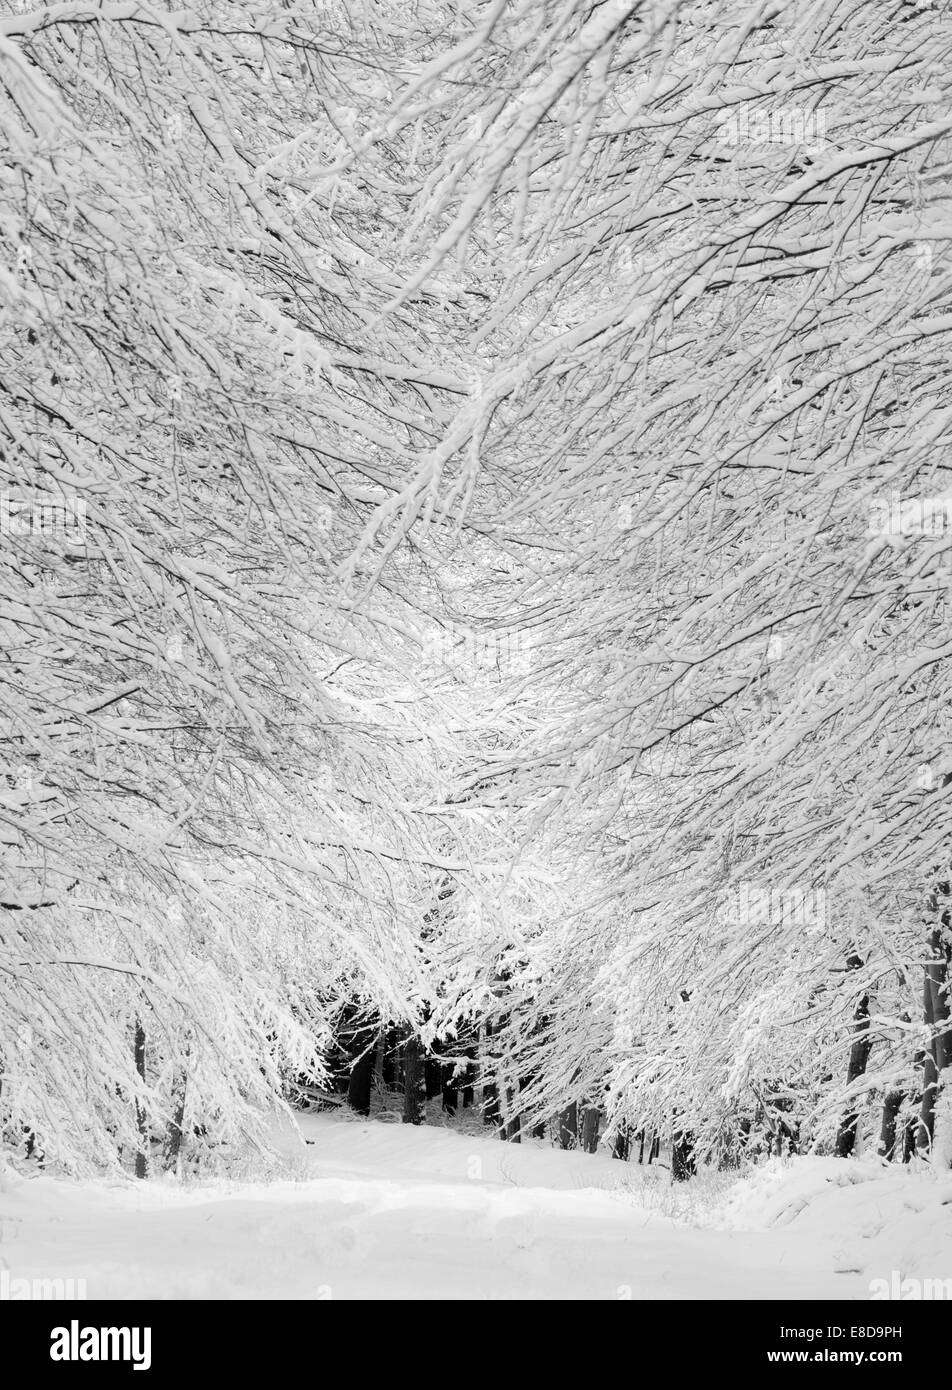 Couverte de neige d'hiver forêt de hêtres le long d'une piste couverte de neige, Parc National de Jasmund, Rügen, Mecklembourg-Poméranie-Occidentale Banque D'Images